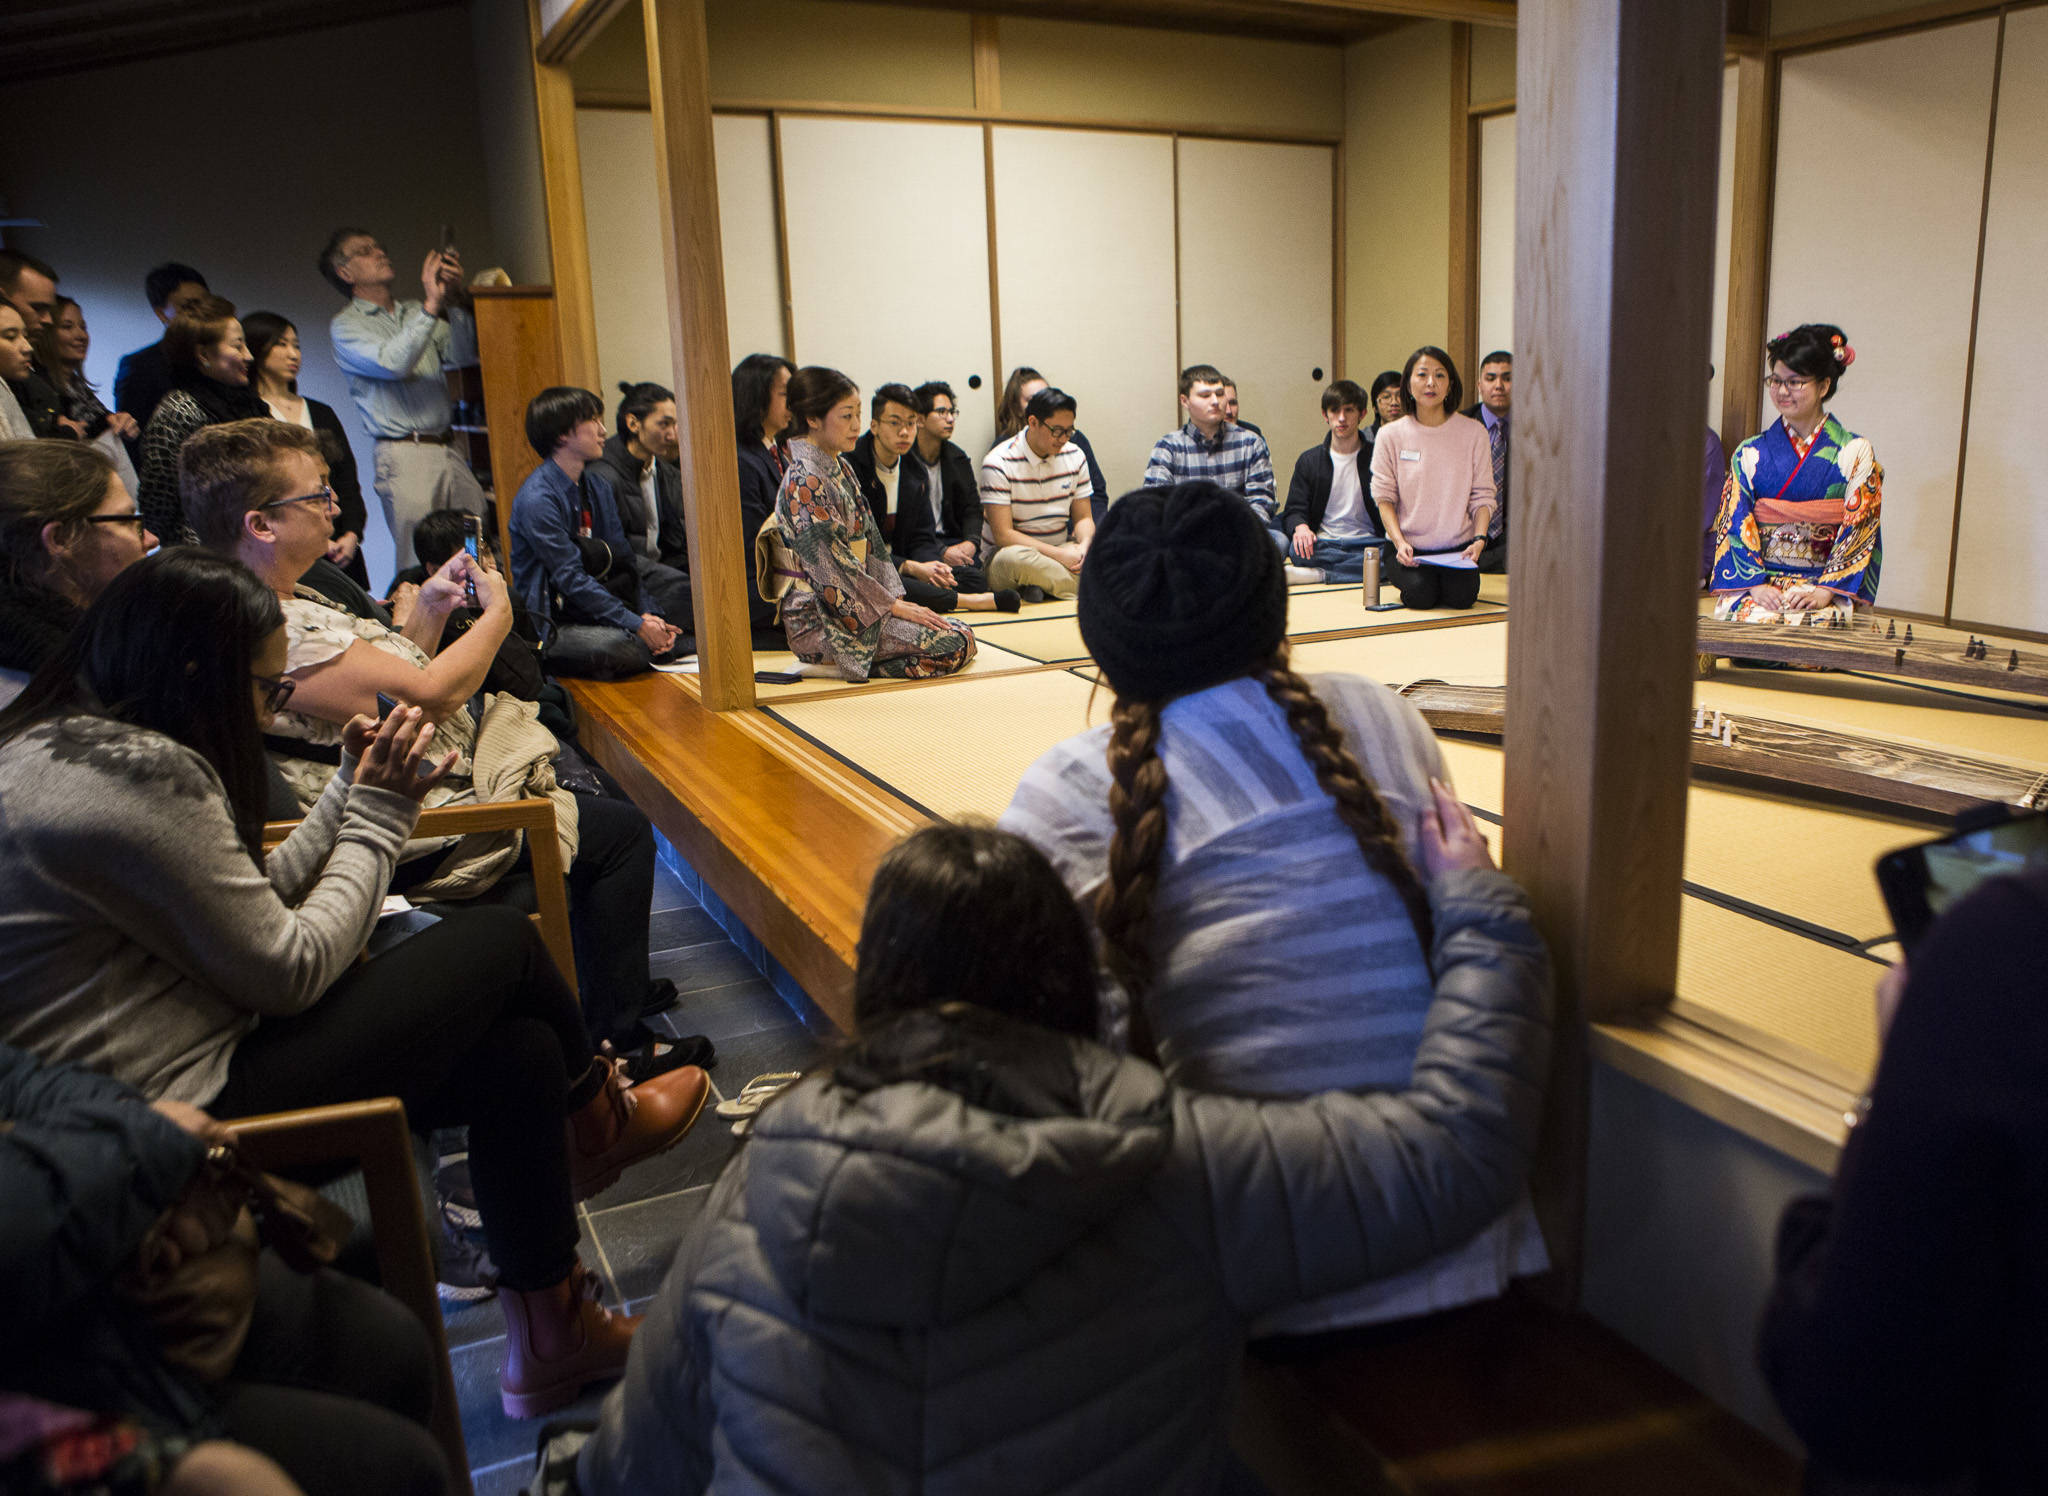 People gather to watch Kotoko Miyamae’s Koto performance on Jan. 24 in Everett. (Olivia Vanni / The Herald)